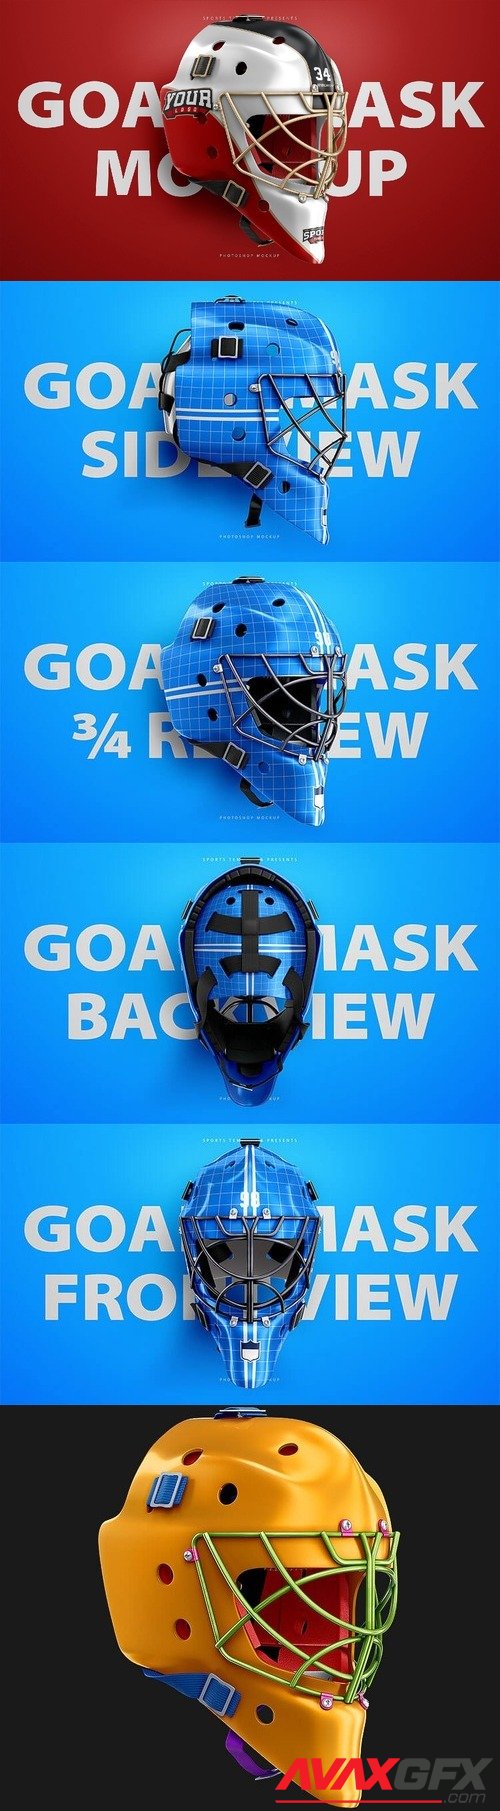 Hockey Goalie Mask Mockup Templates